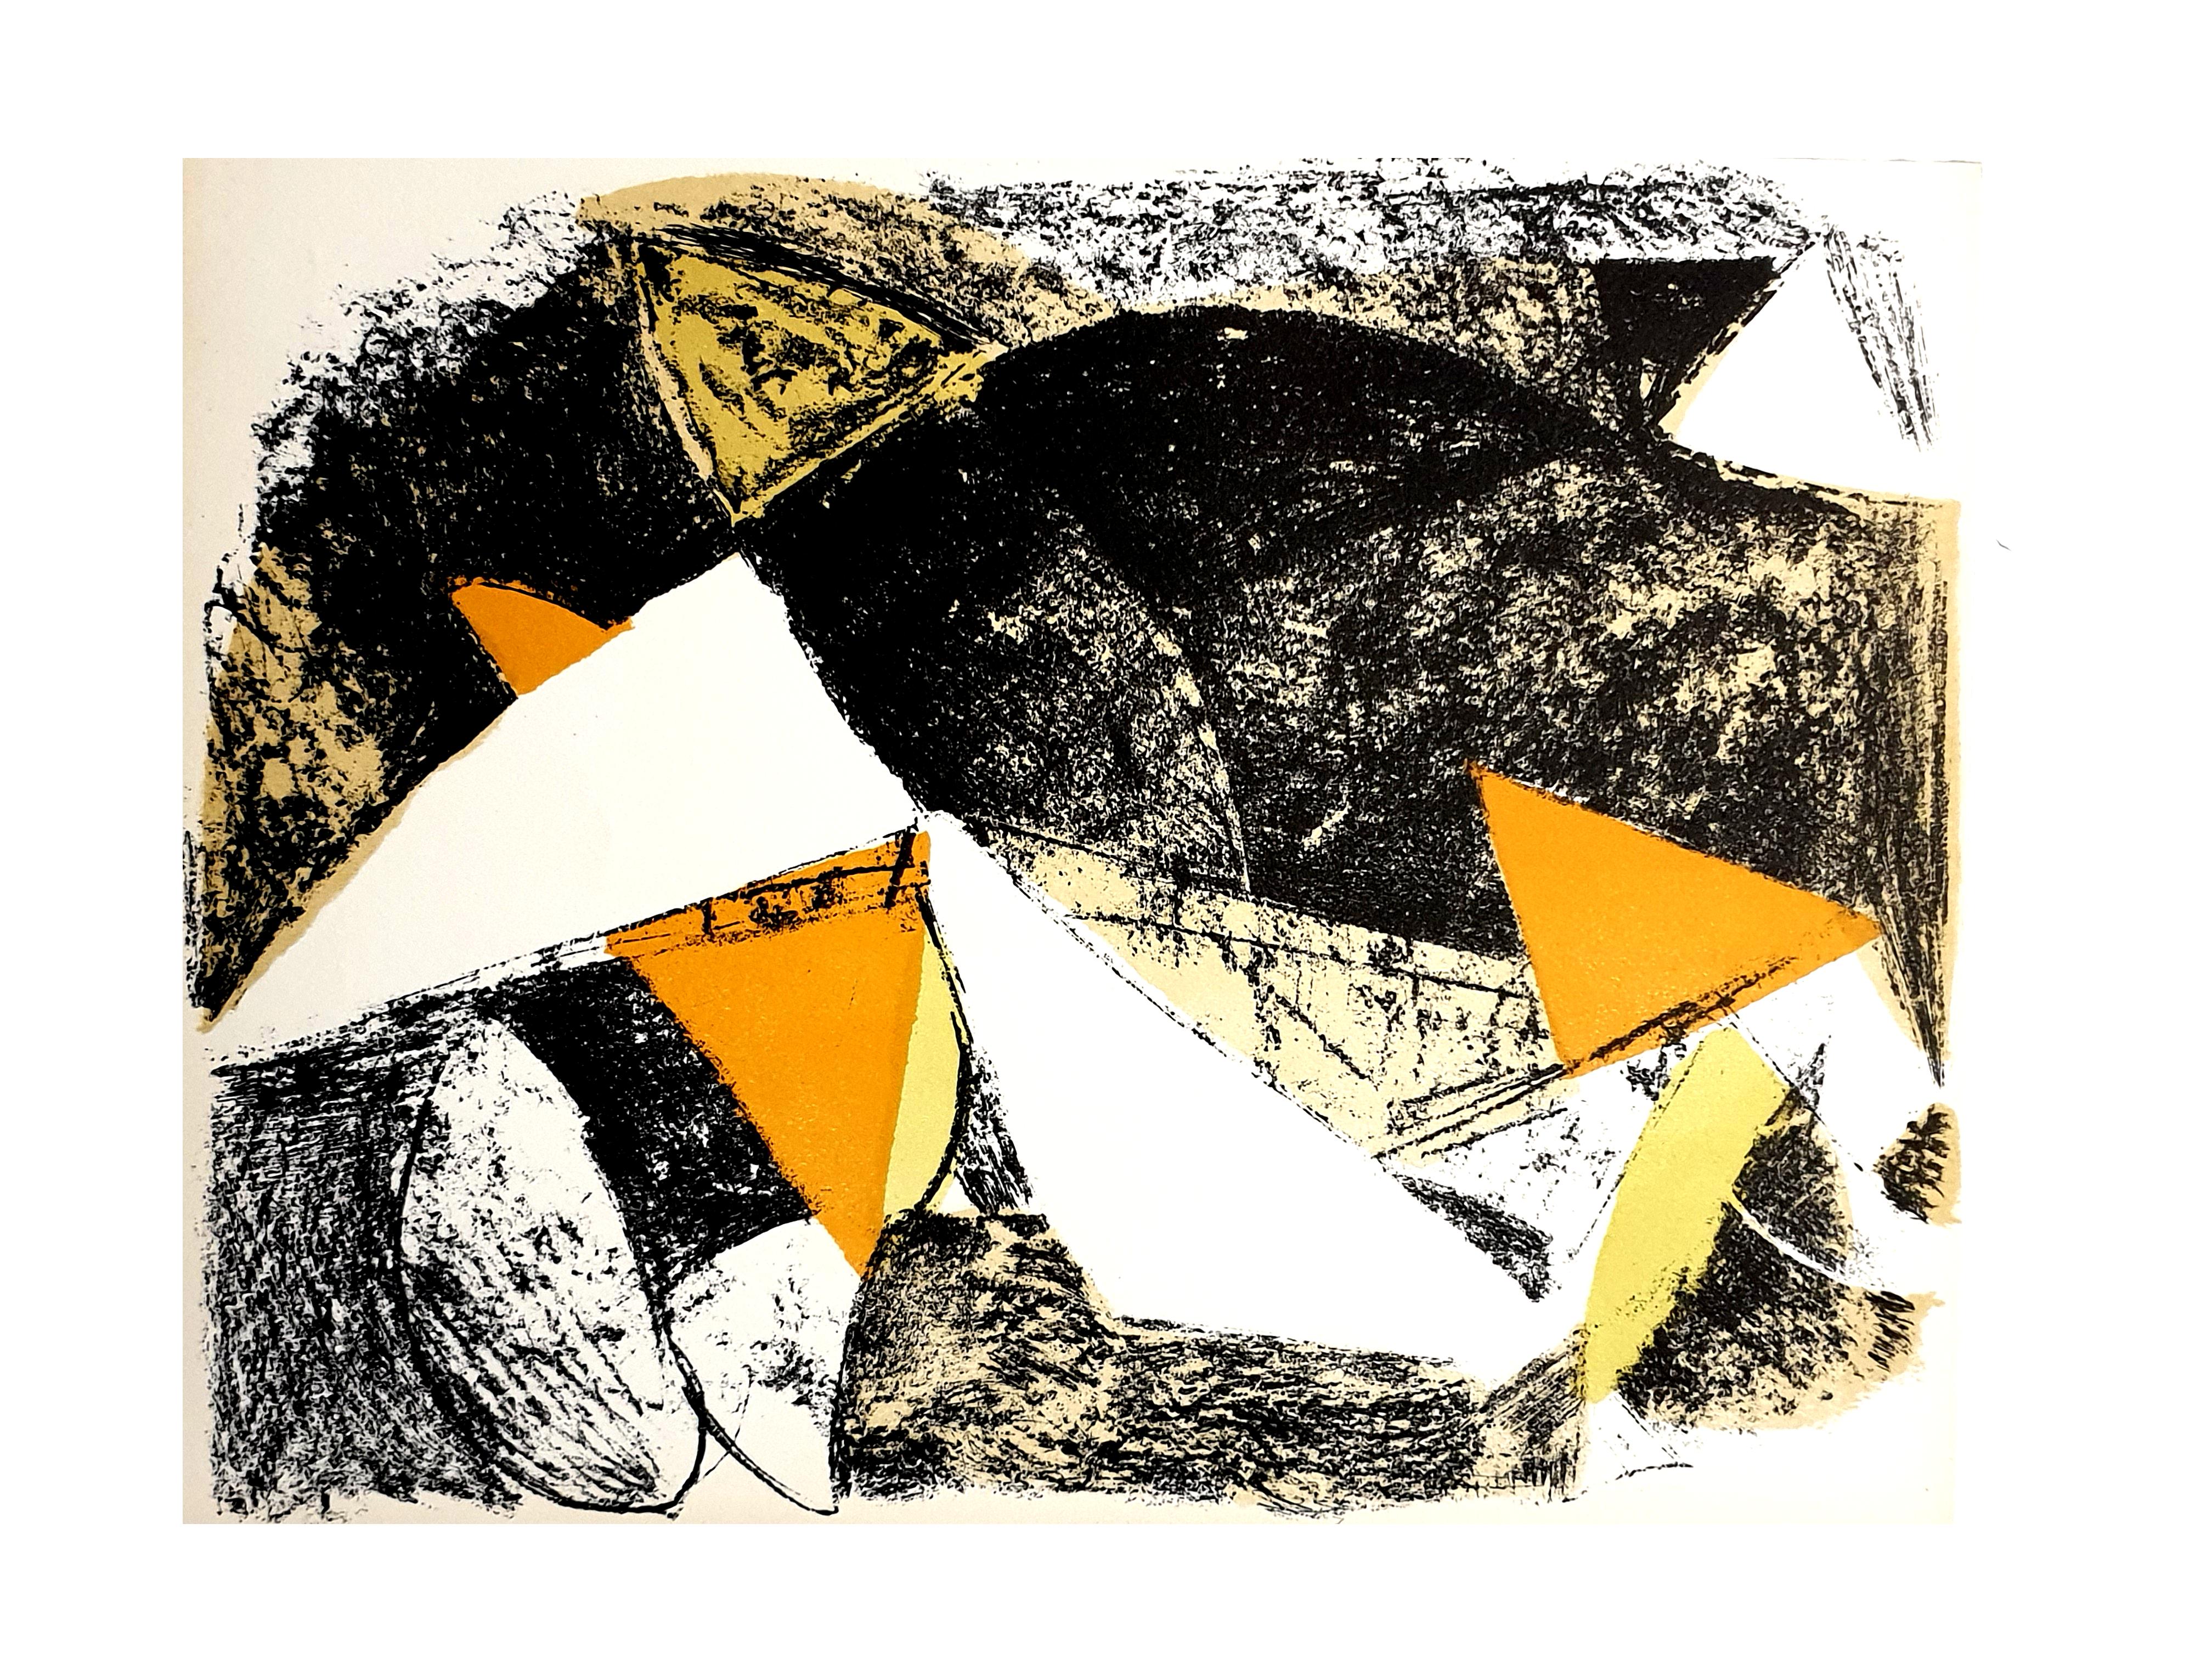 Marino Marini - Pferd und Reiter - Original Lithographie
1963
Abmessungen: 32 x 24 cm
Aus der Kunstzeitschrift XXe siècle
Unsigniert und nicht nummeriert wie ausgestellt